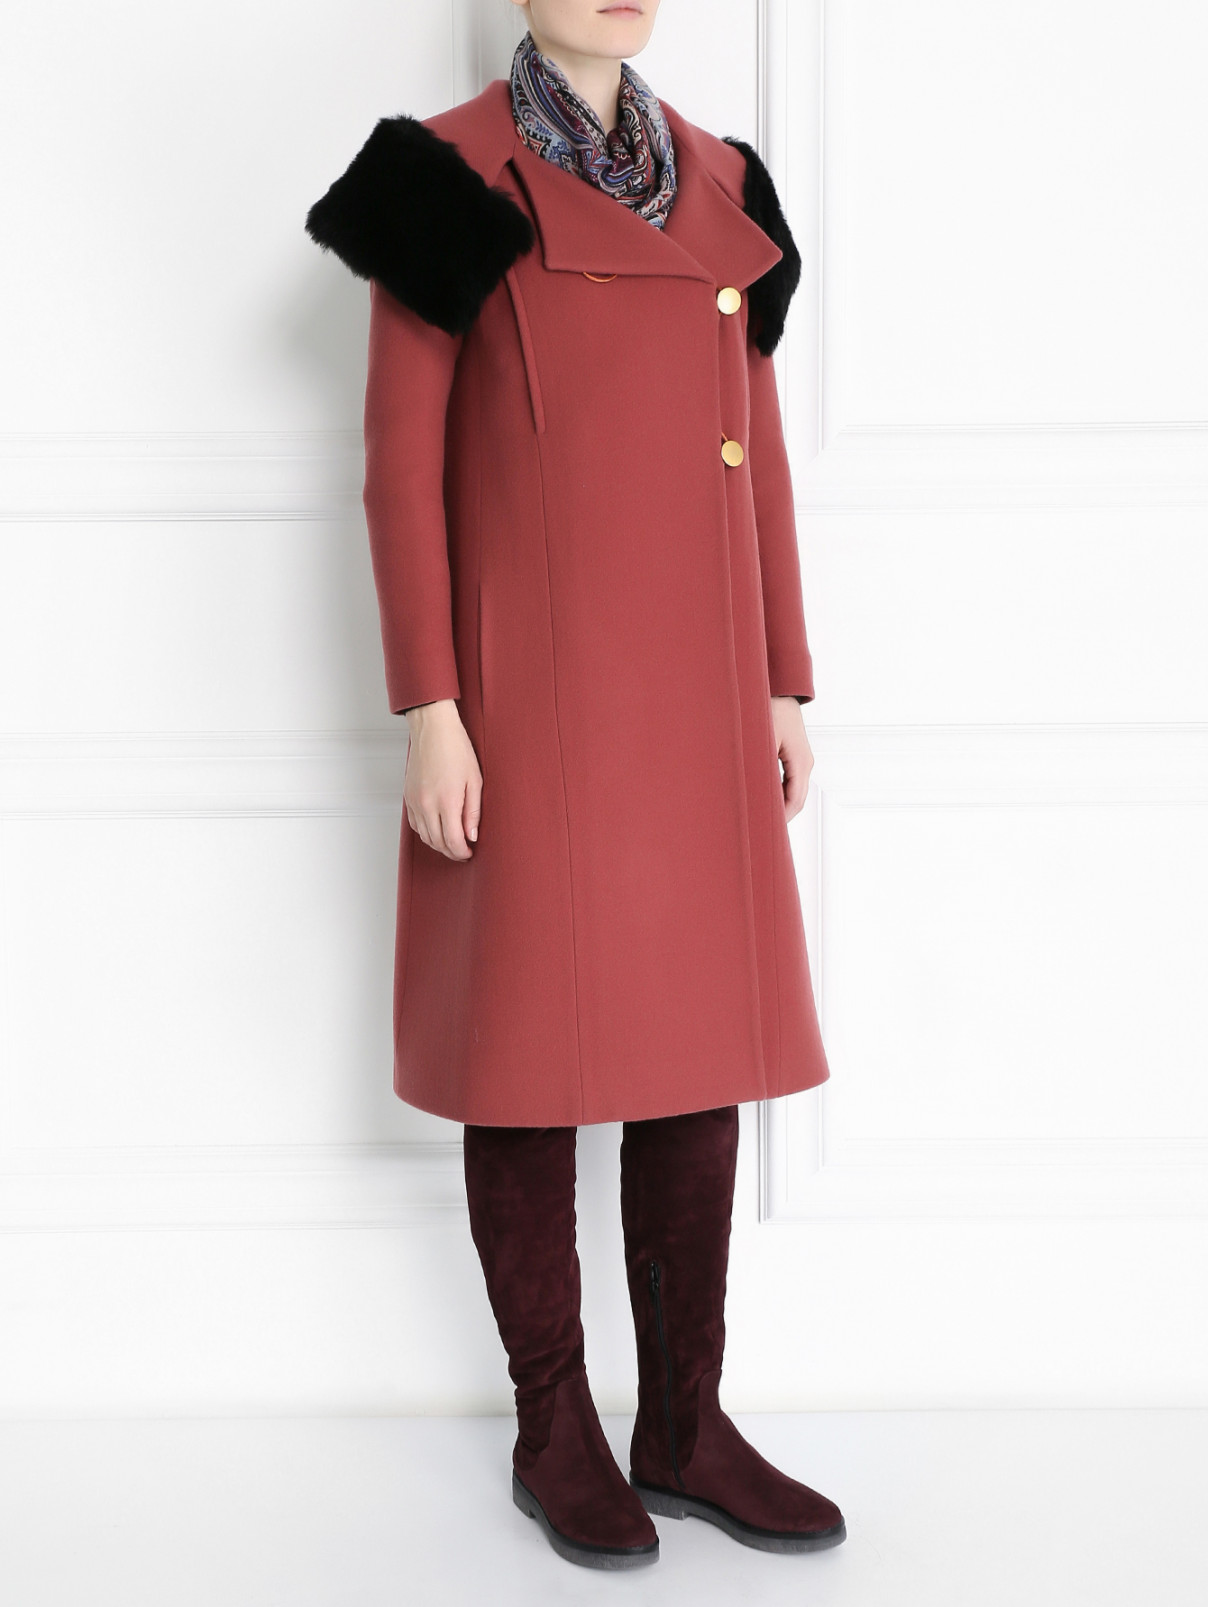 Пальто из шерсти прямого кроя с отделкой из меха Paul Smith  –  Модель Общий вид  – Цвет:  Красный